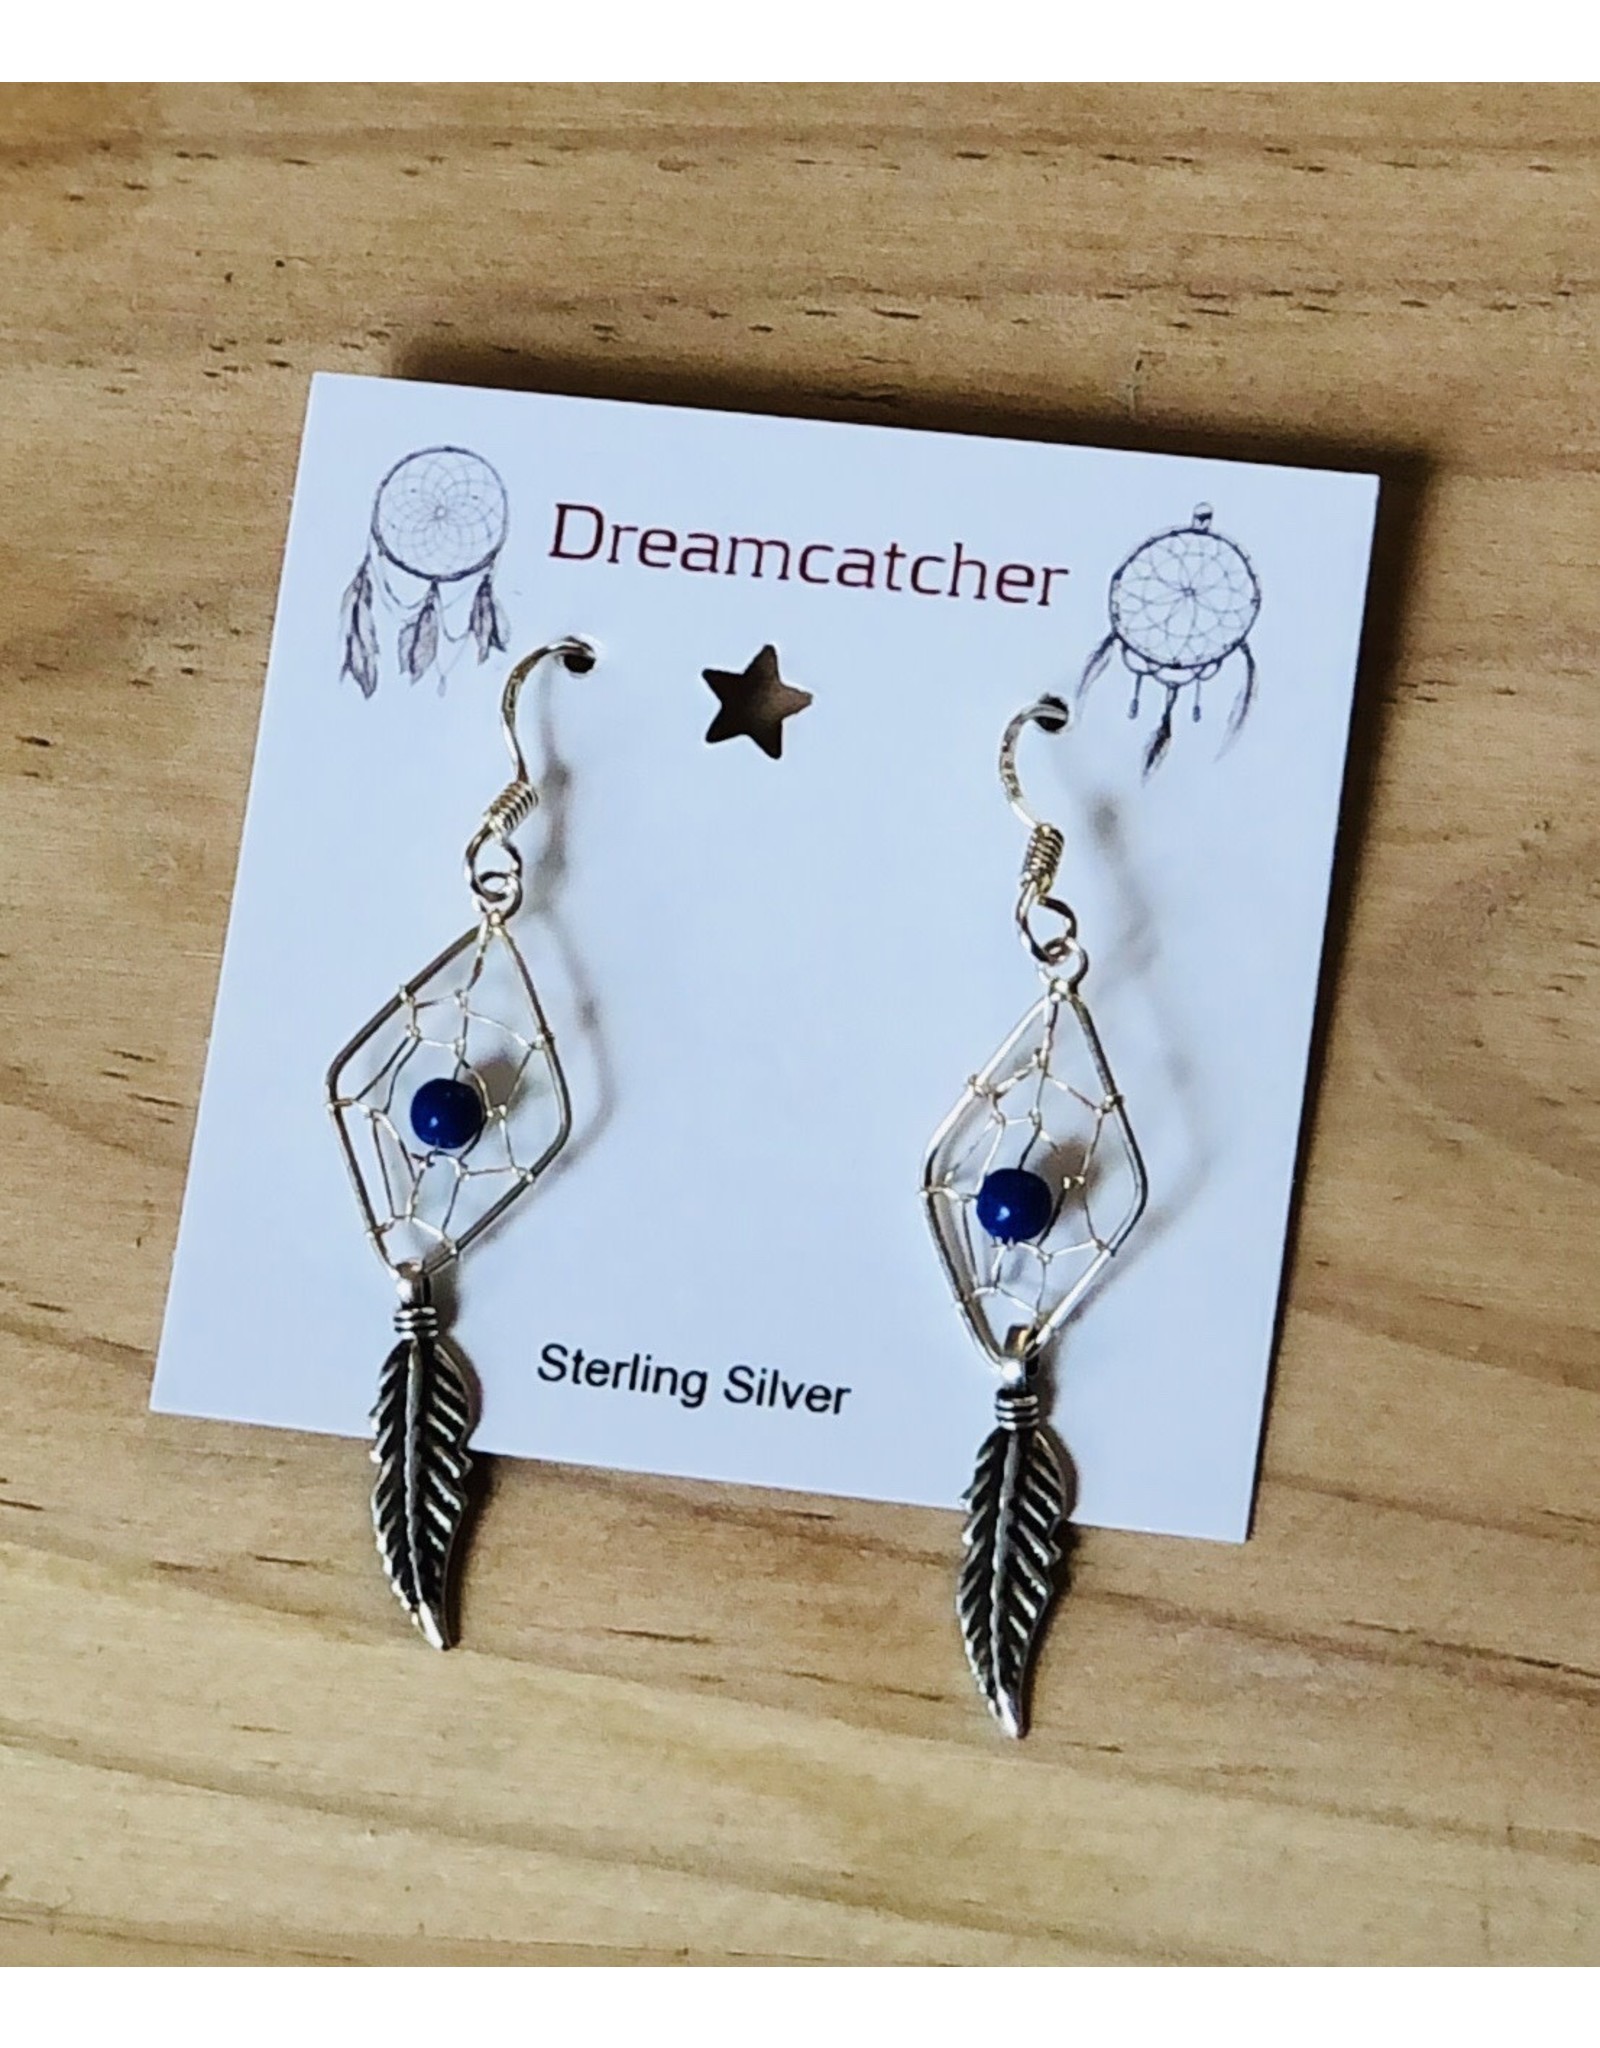 Dreamcatcher Jewelry